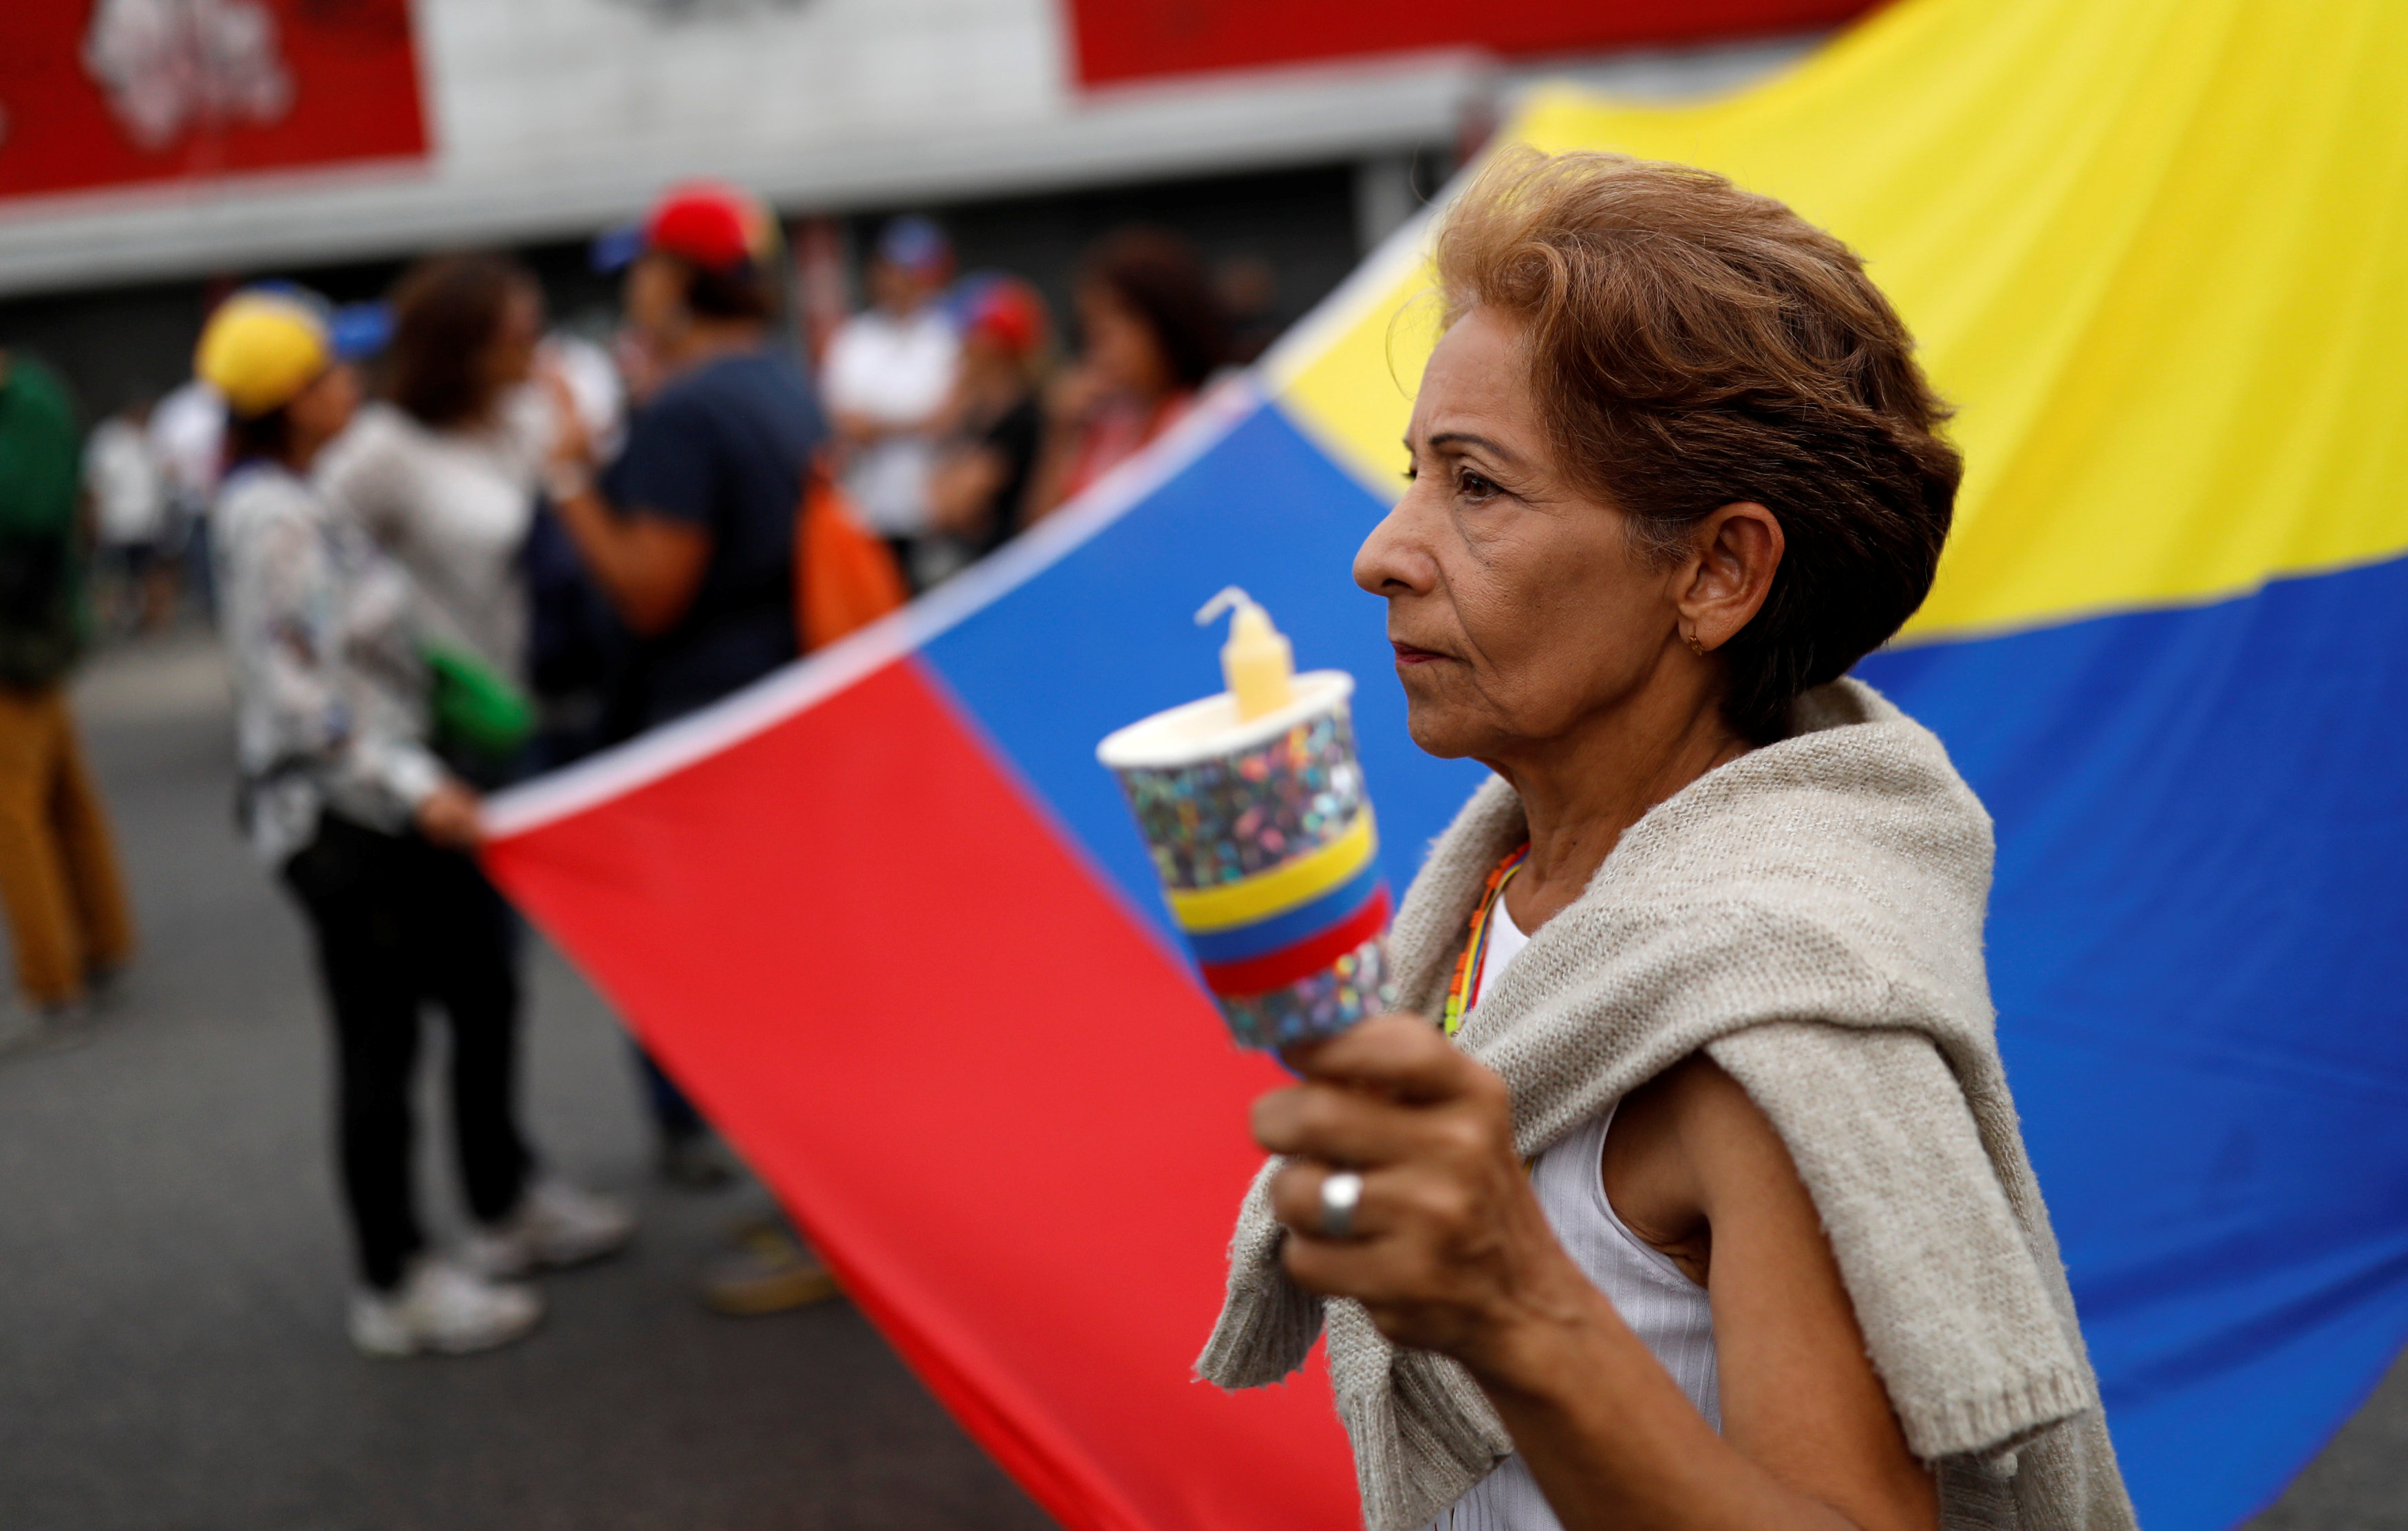 Opositores se concentran en Caracas en honor a los caídos durante protestas Foto: REUTERS/Carlos Garcia Rawlins